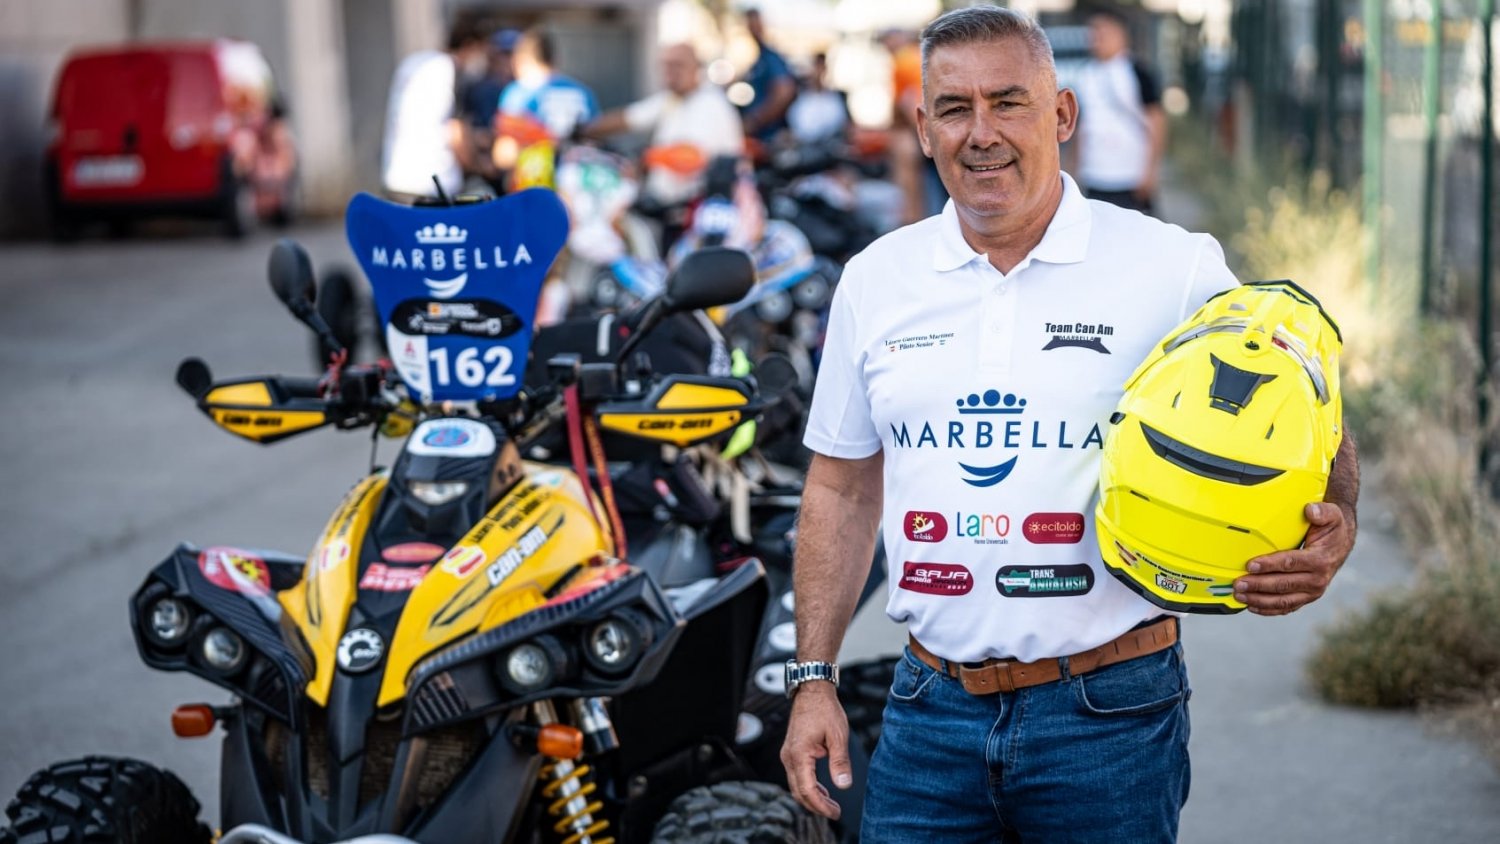 El programa de patrocinio ‘Marca Marbella’ incorpora al piloto de quad Lázaro Guerrero y al atleta Cristian Benítez